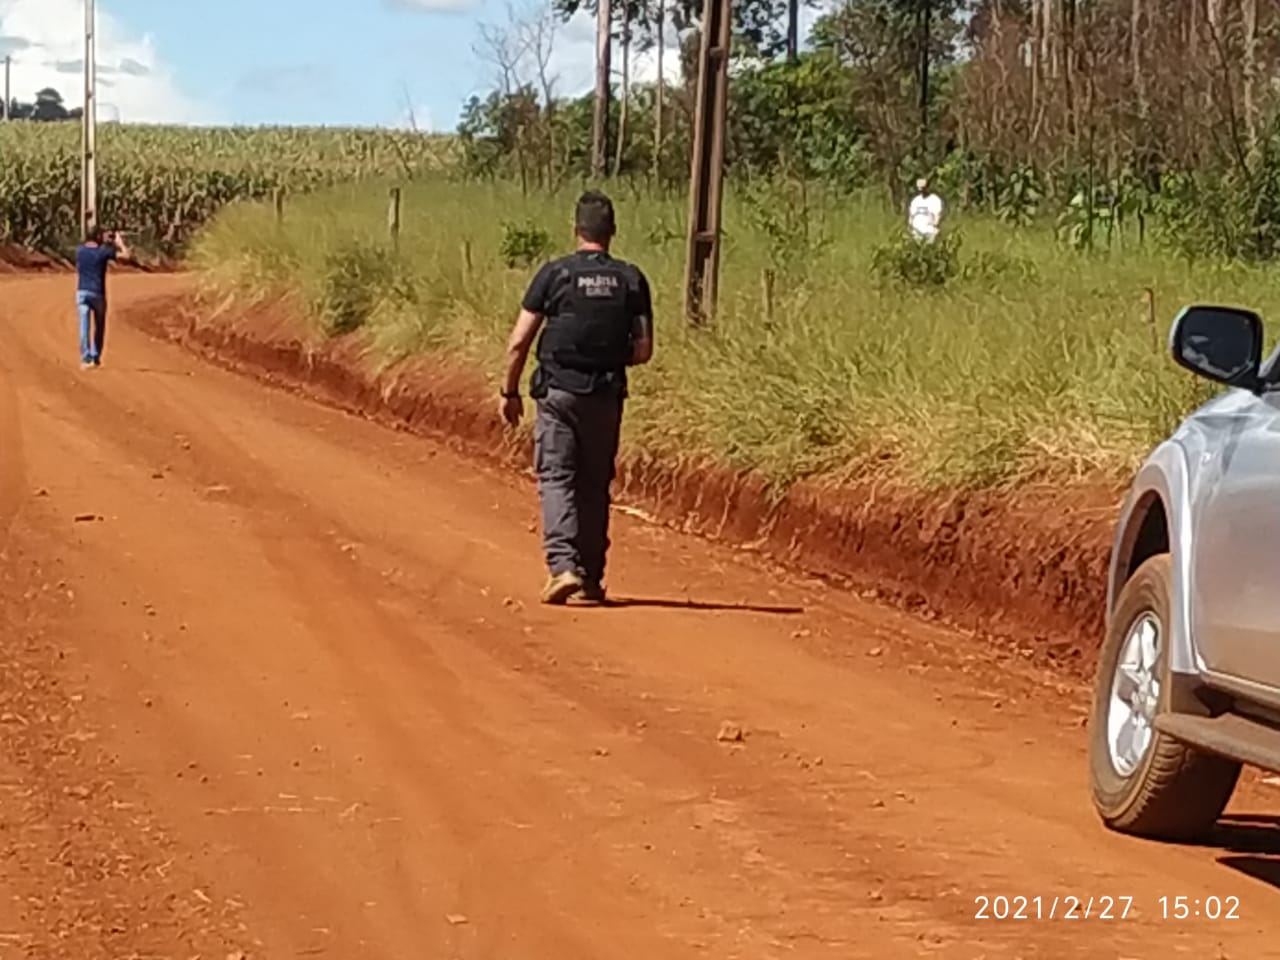 Autores de homicídio registrado em Quedas do Iguaçu são presos em flagrante